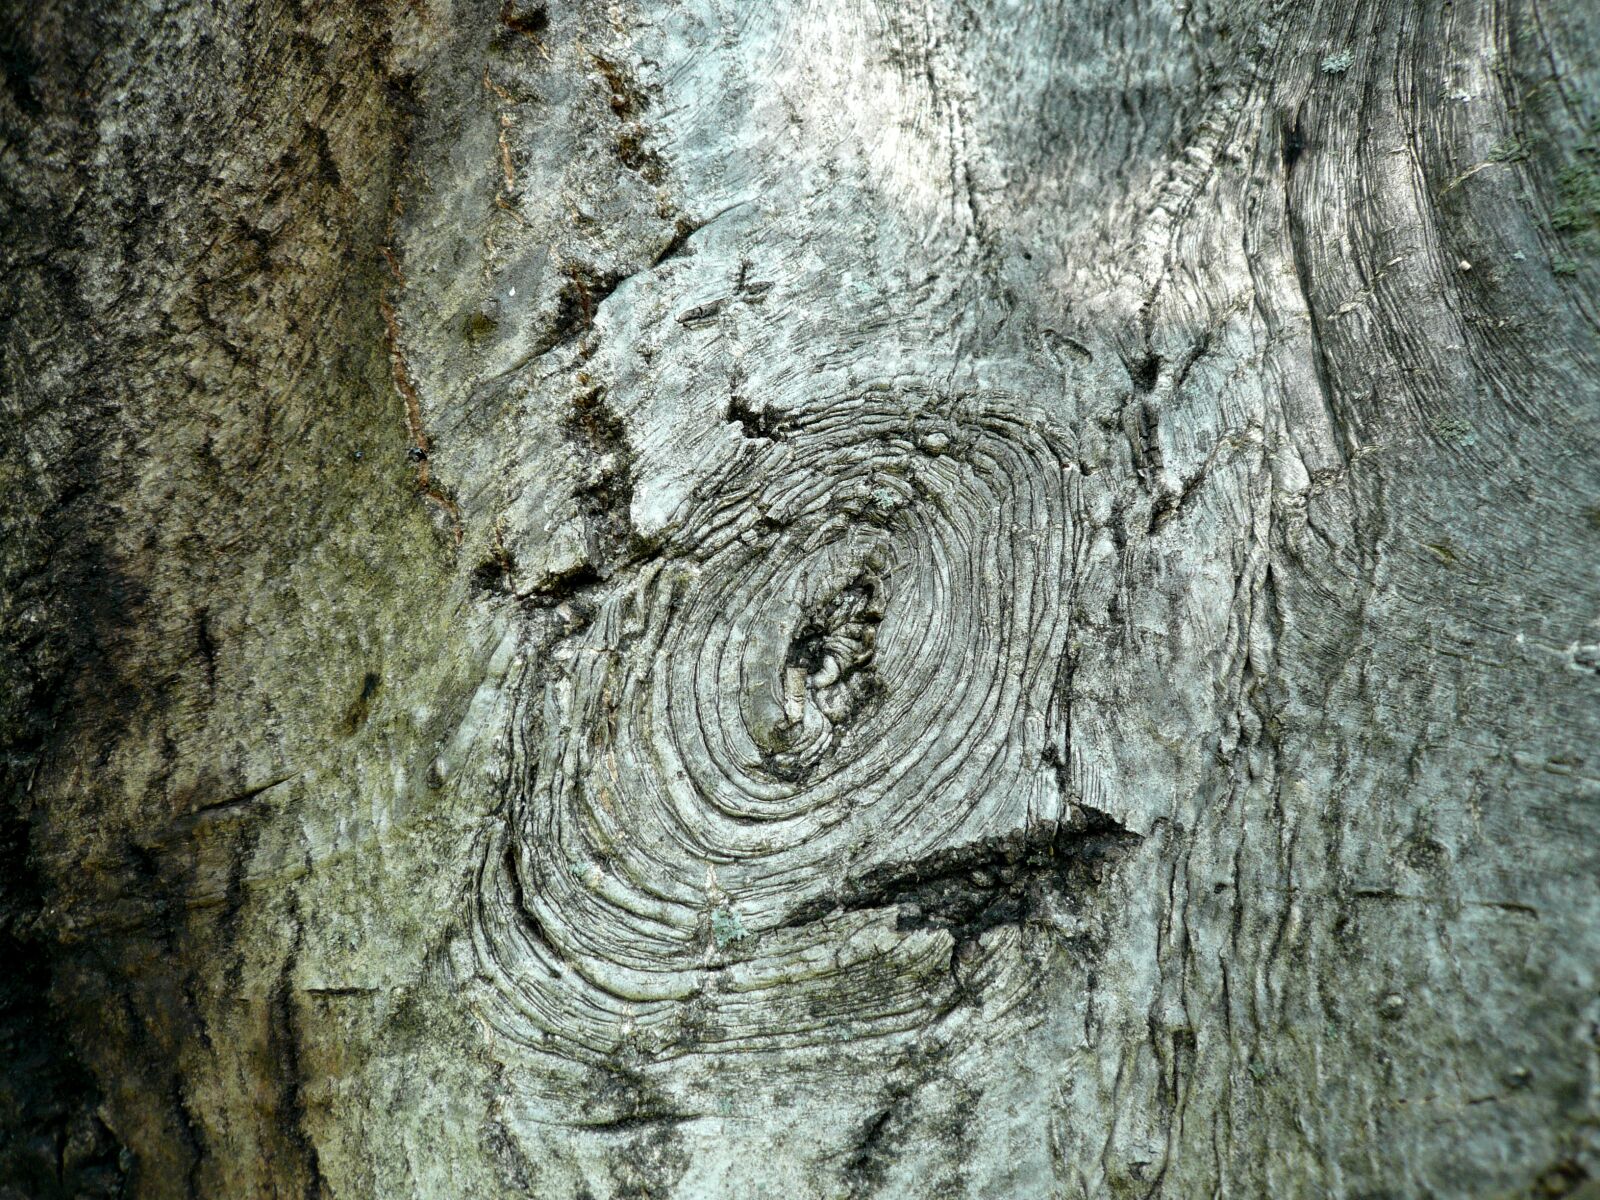 Panasonic DMC-FX100 sample photo. Bark, tree, walnut photography